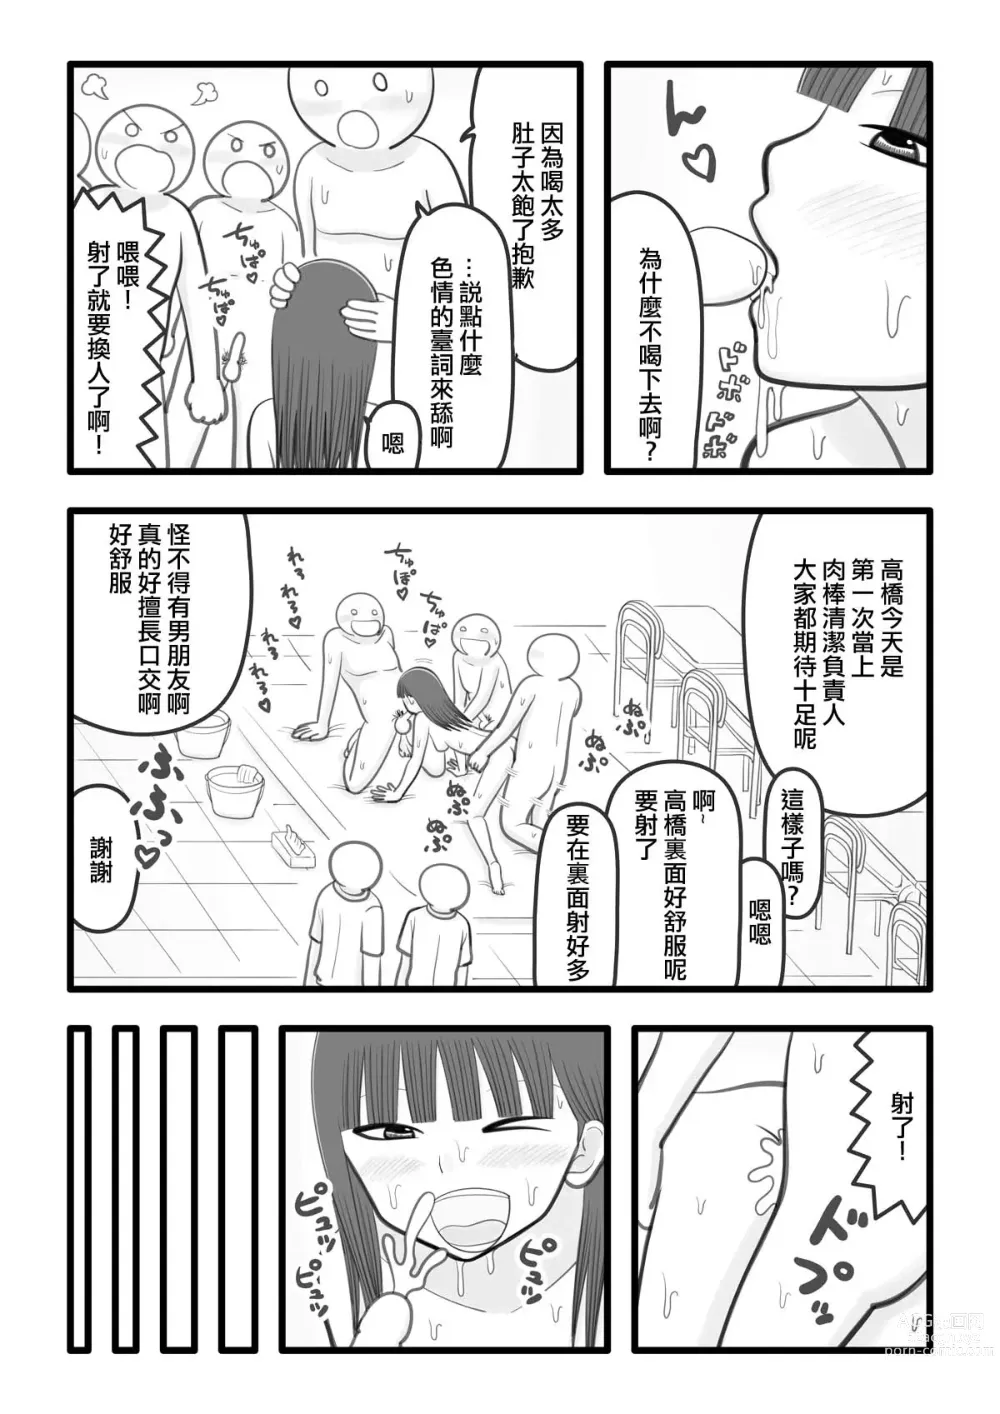 Page 3 of doujinshi 我喜歡的女孩子是肉棒清潔負責人